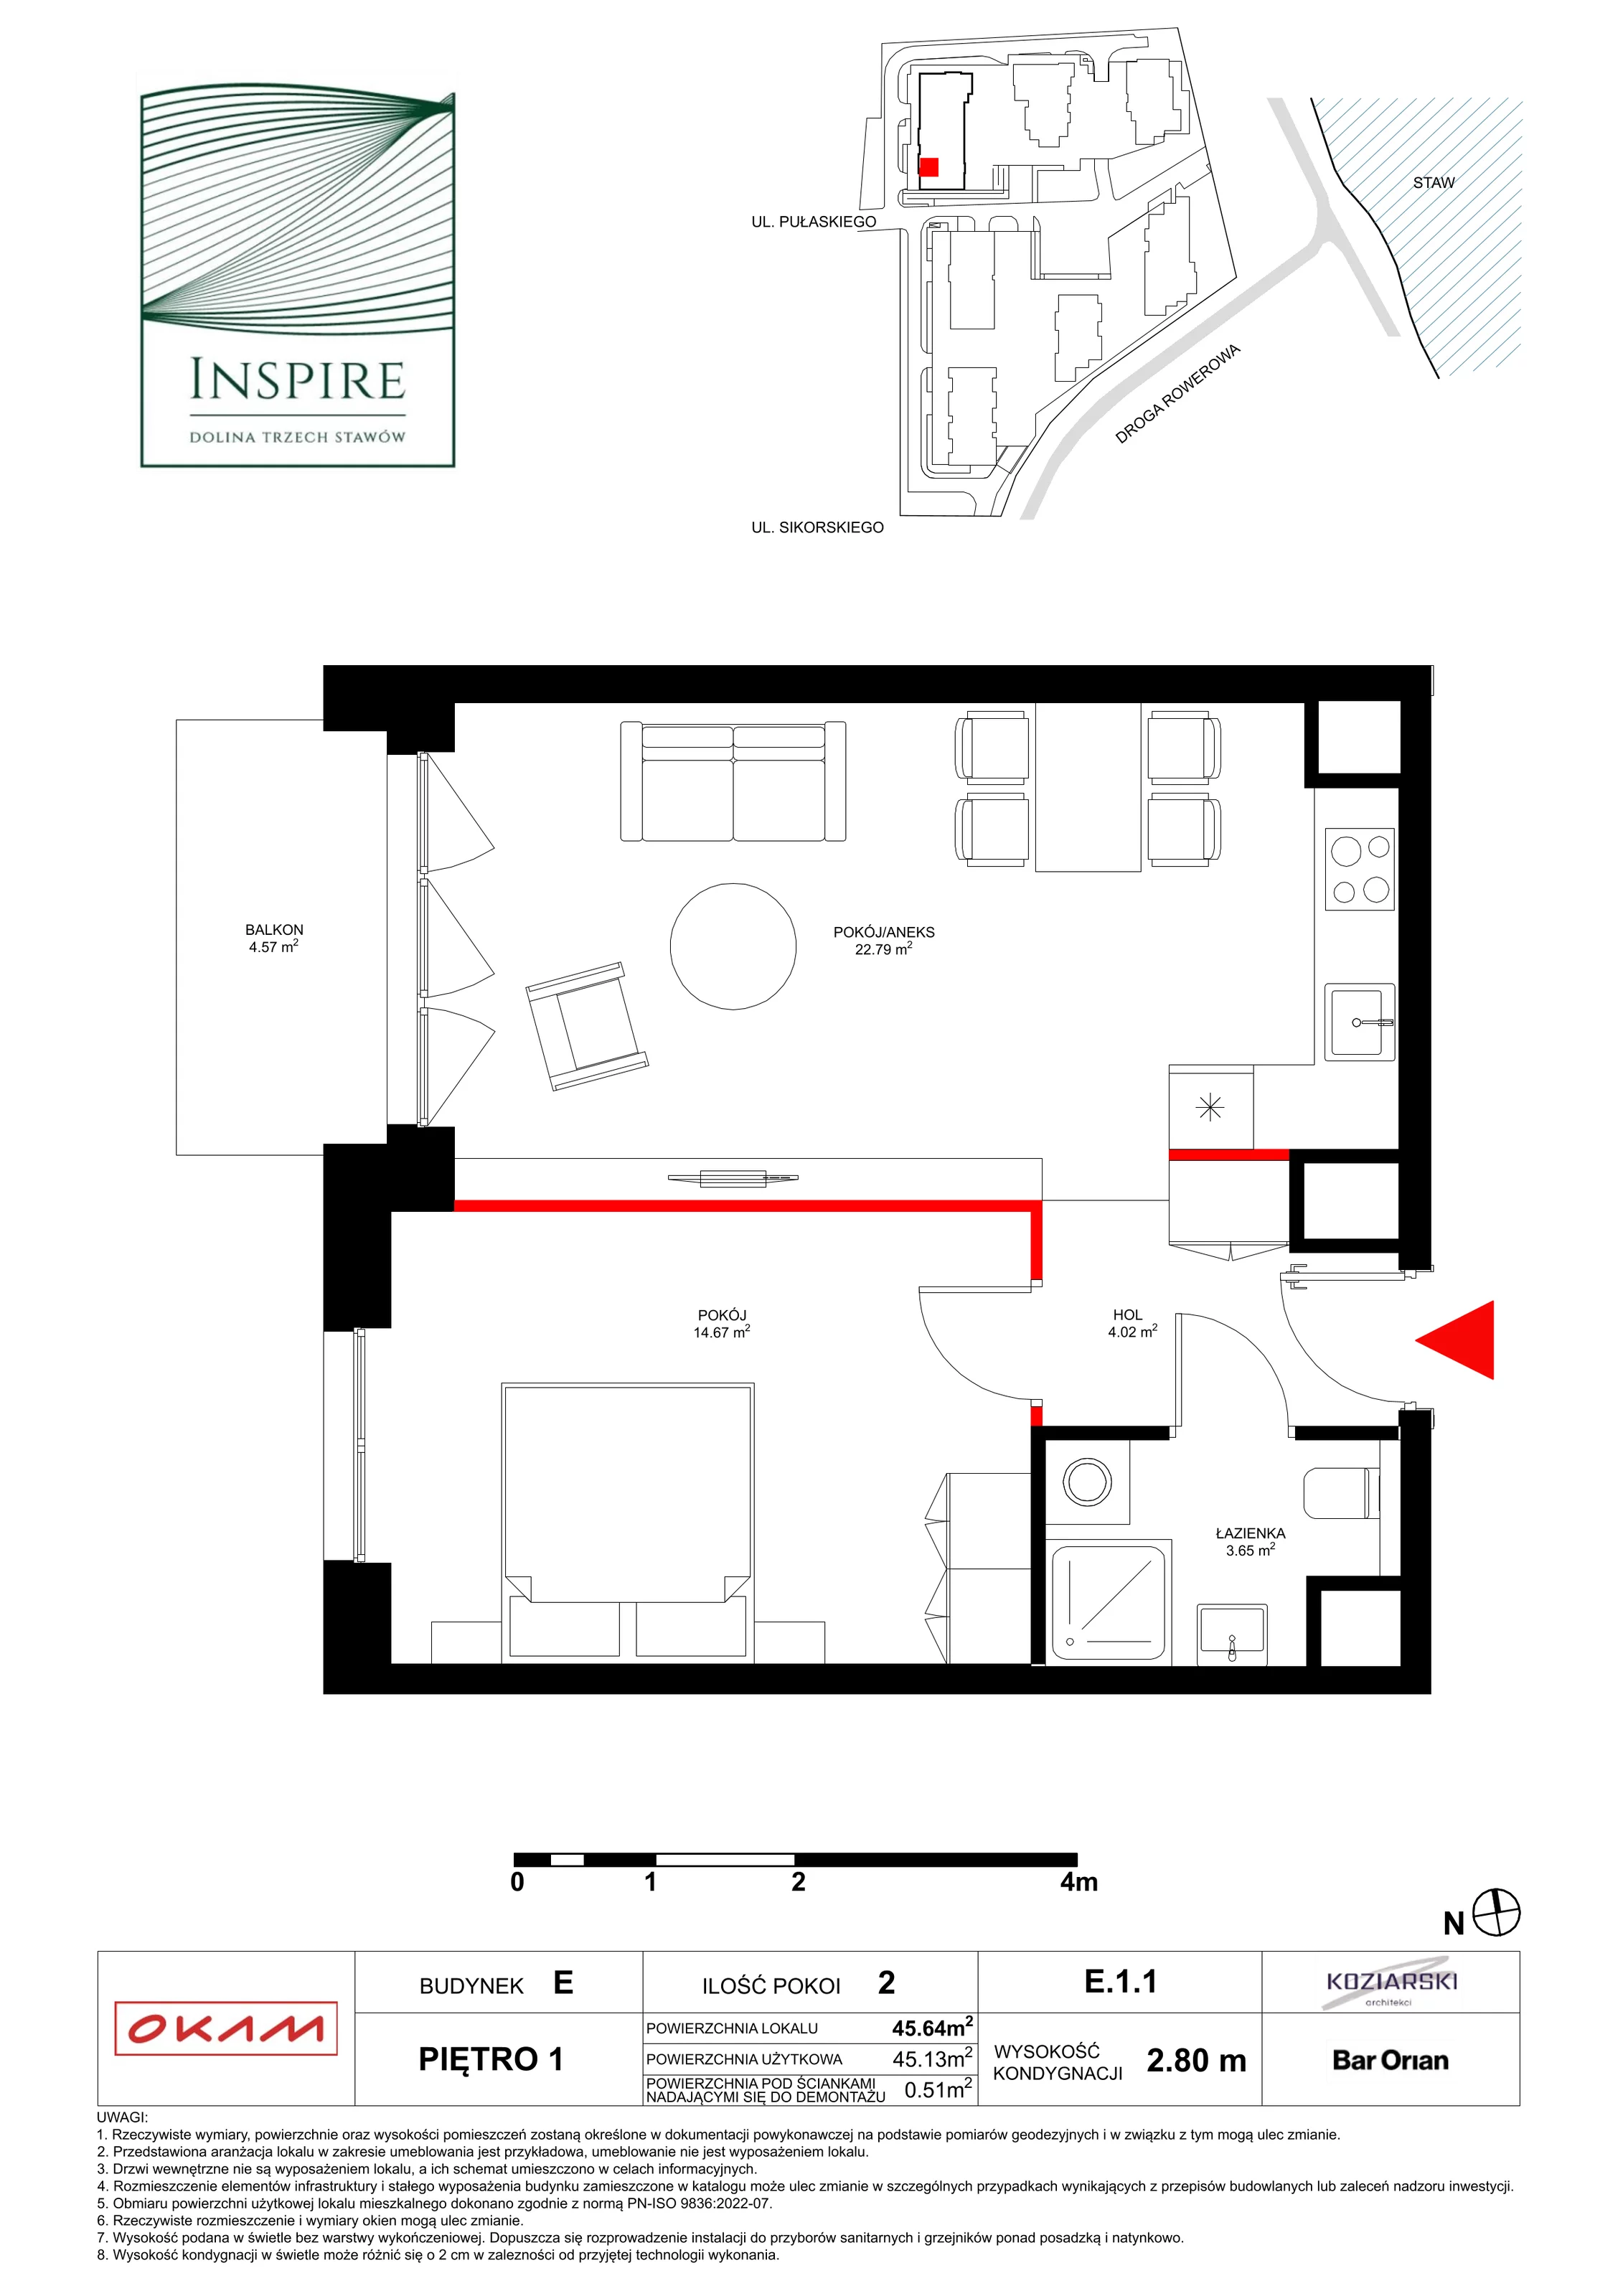 Apartament 45,12 m², piętro 1, oferta nr E.1.1, Inspire, Katowice, Osiedle Paderewskiego-Muchowiec, Dolina Trzech Stawów, ul. gen. Sikorskiego 41